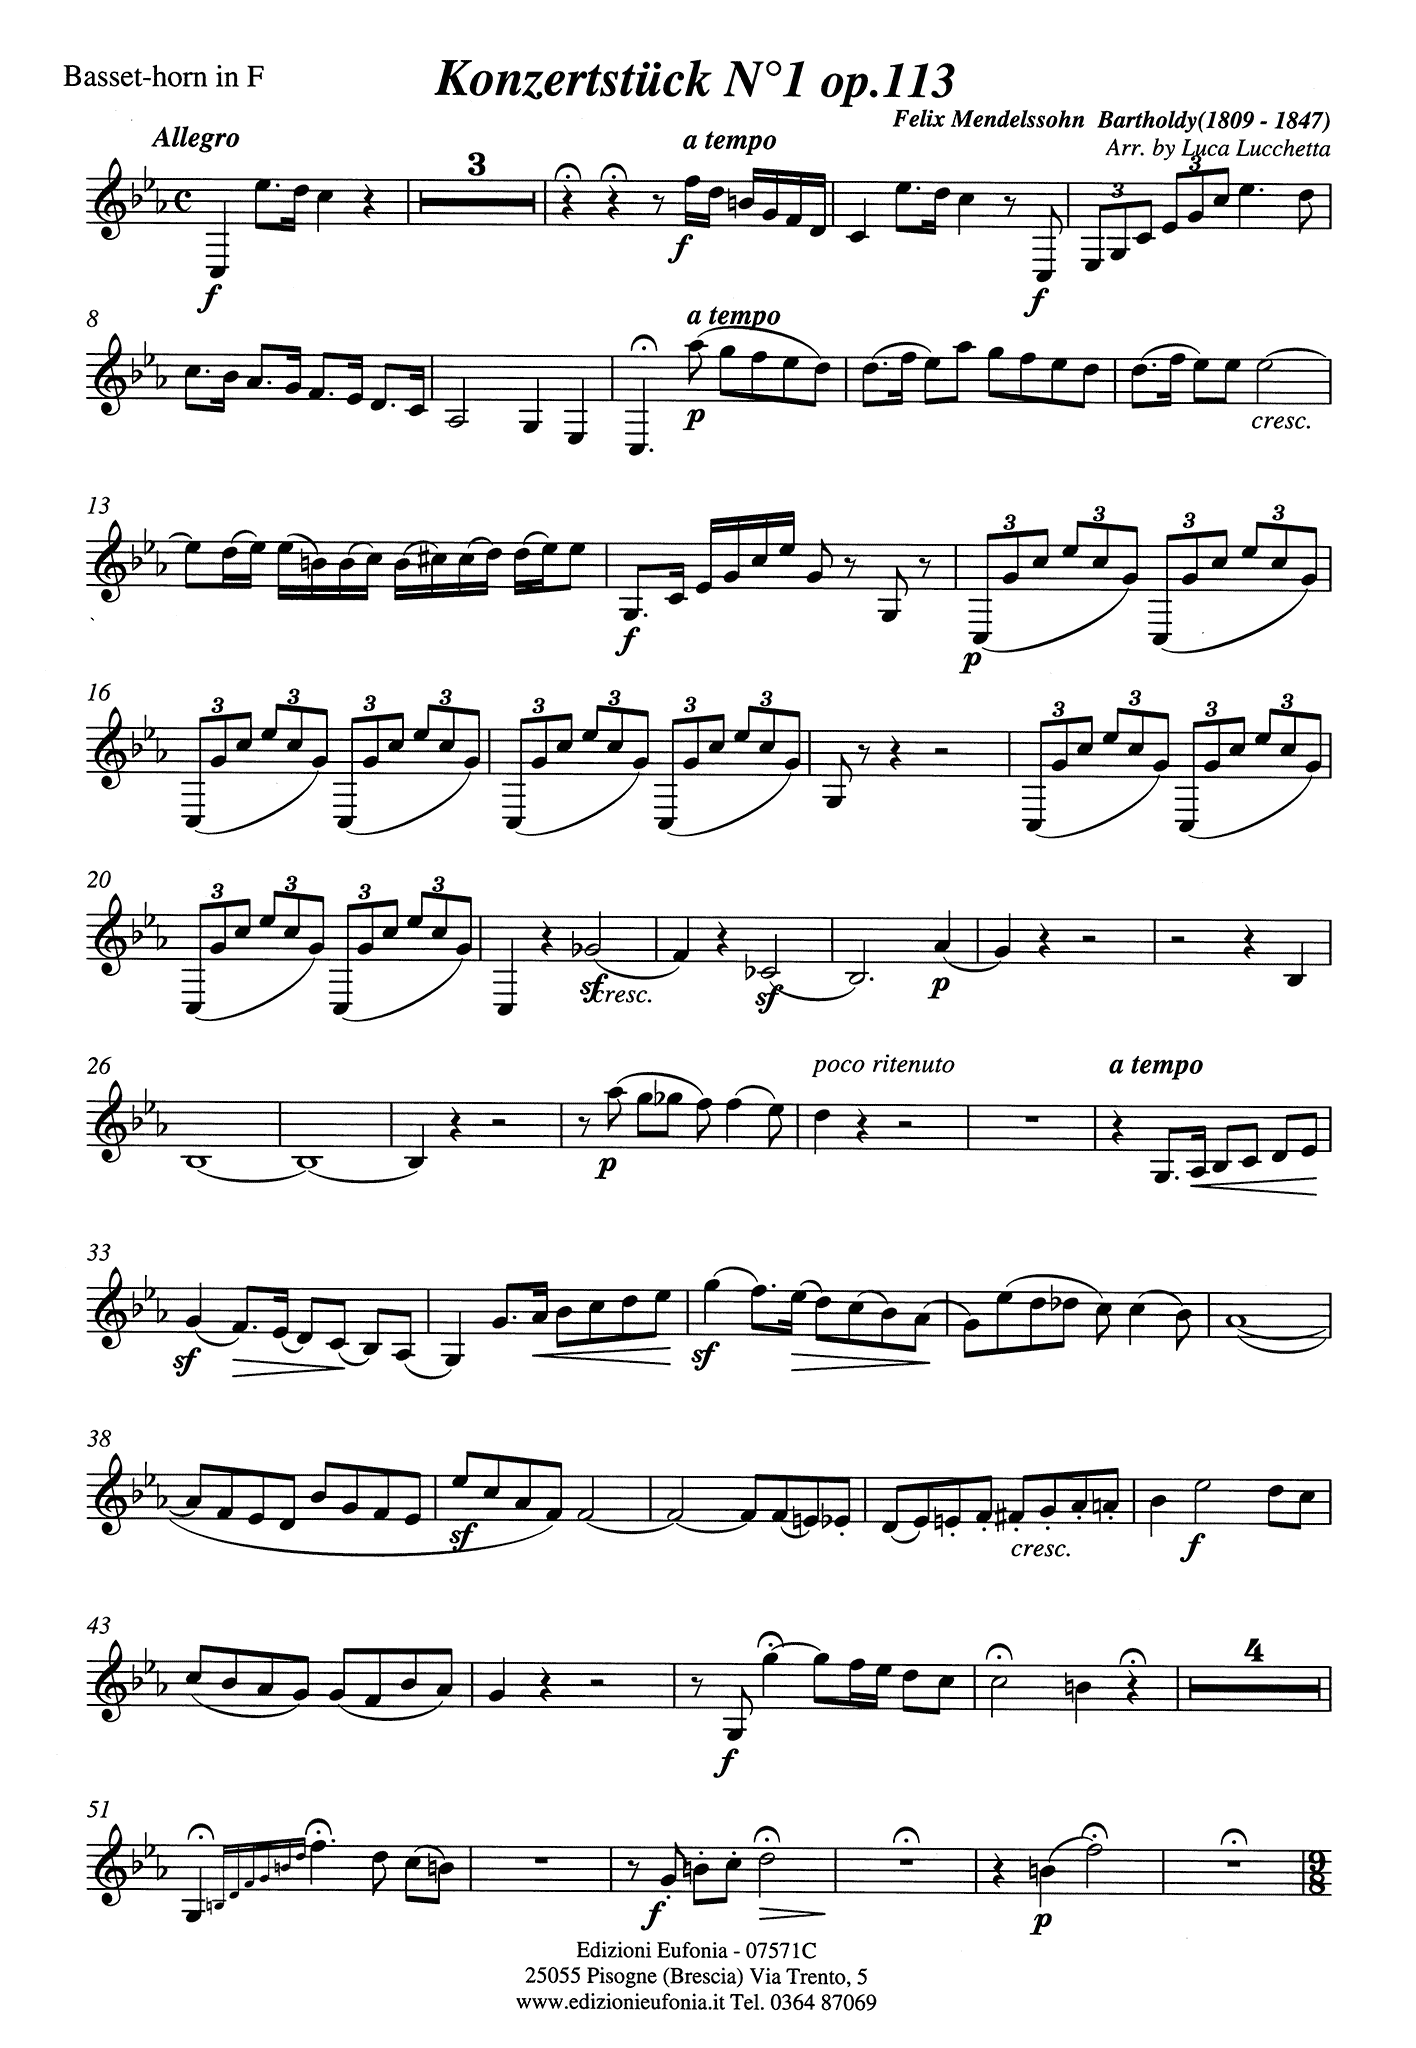 Konzertstück No. 1 in F Minor, Op. 113 Basset horn solo part